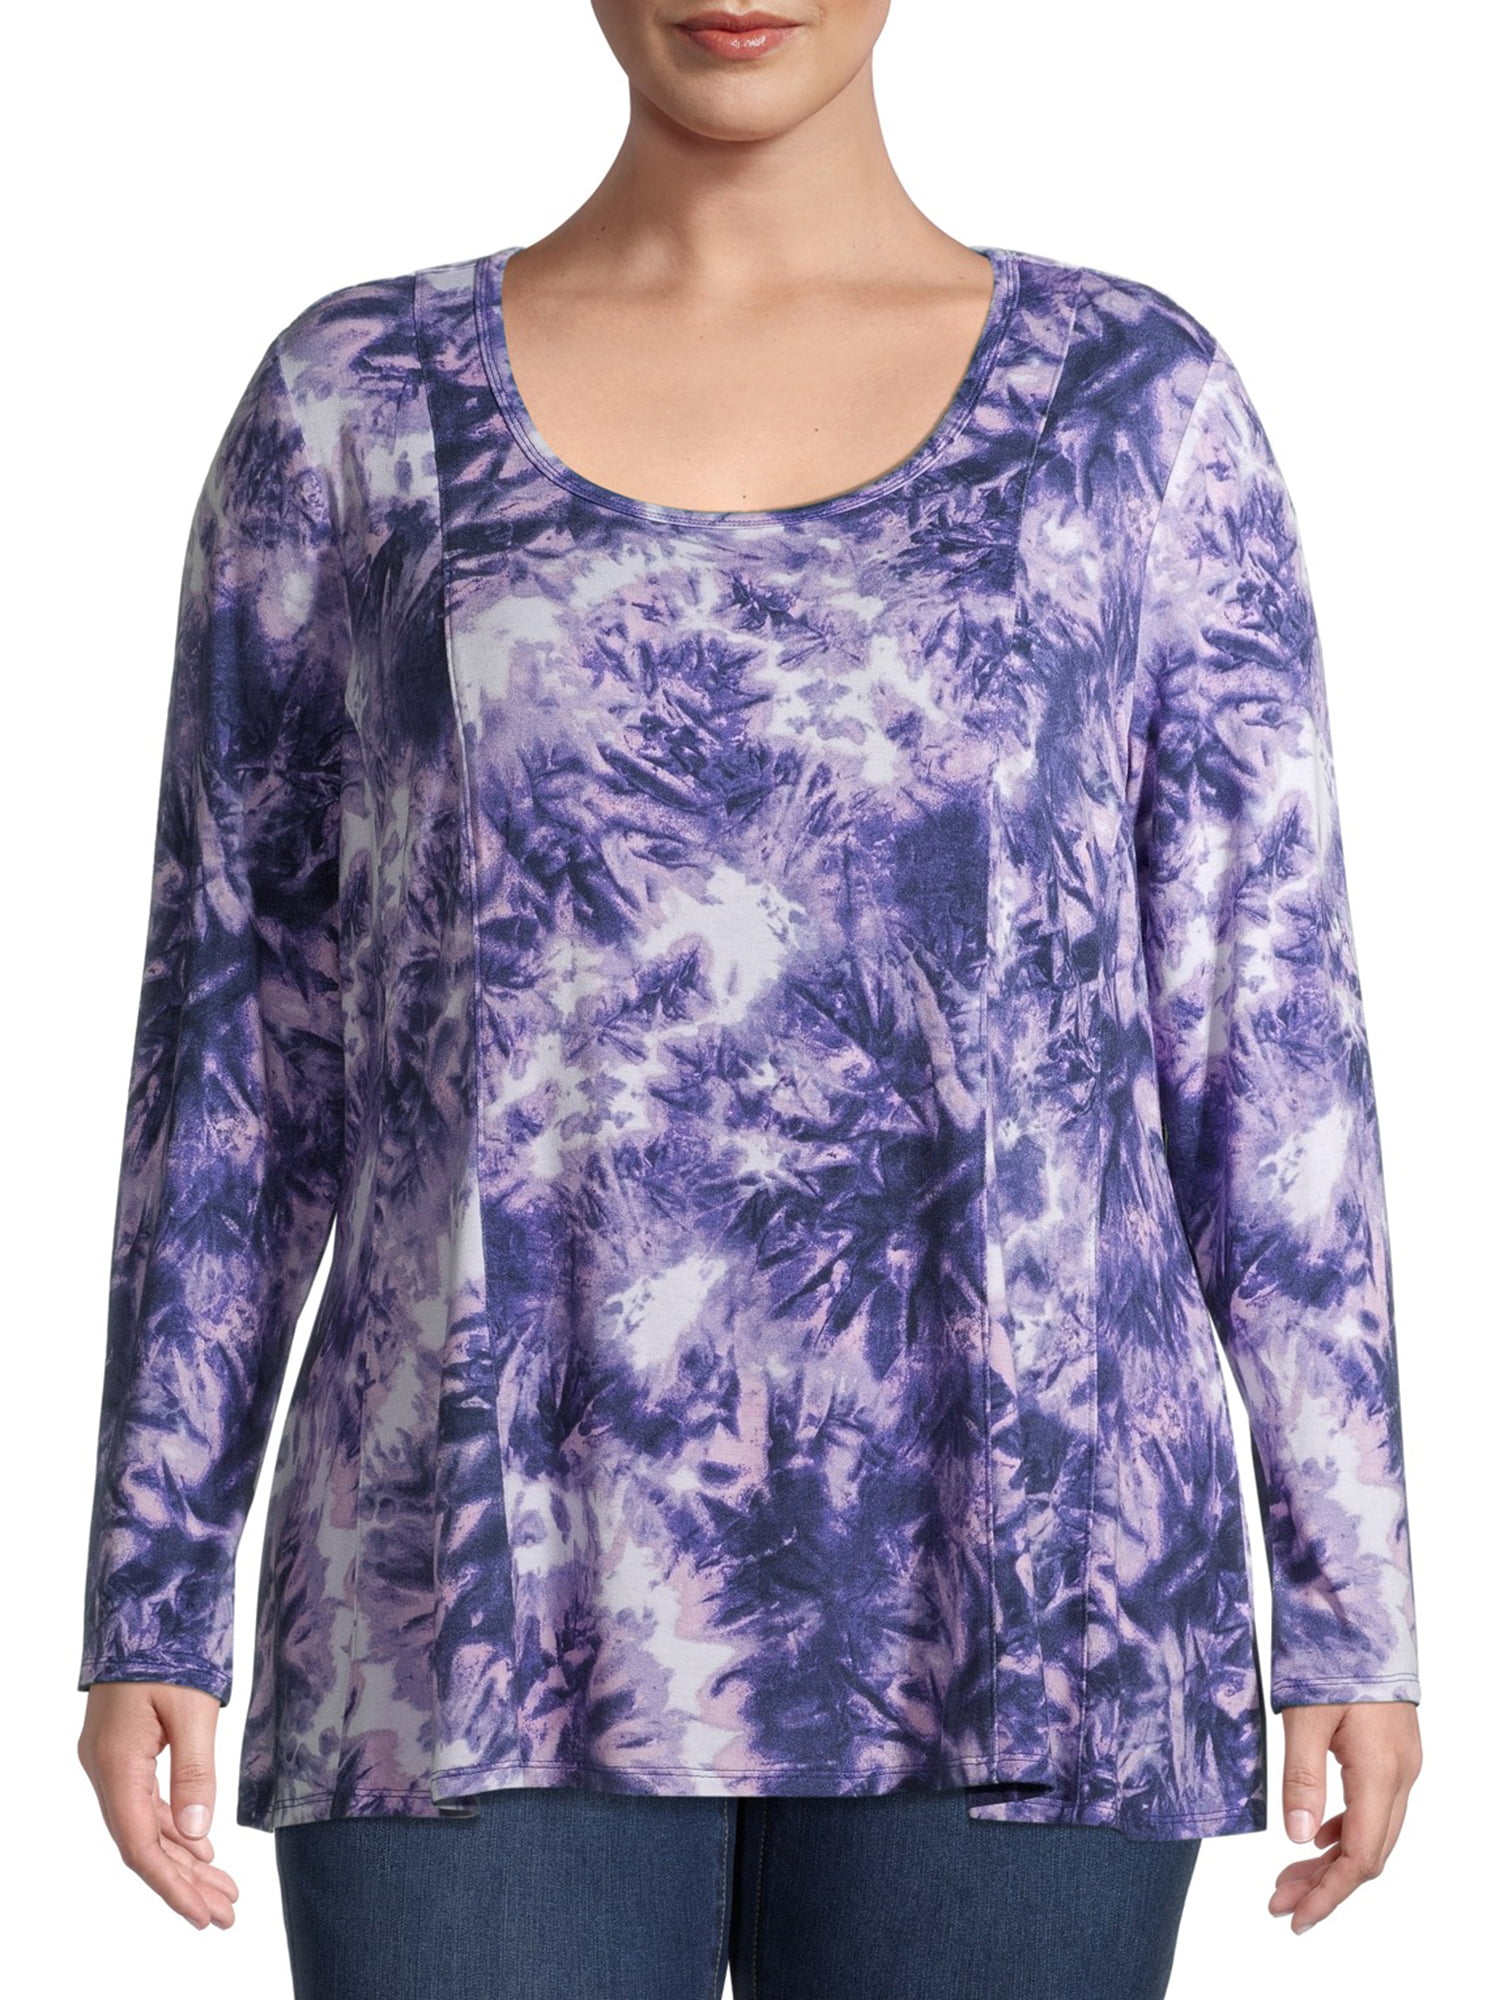 Terra & Sky Women's Plus Size Long Sleeve Swing T-Shirt - Walmart.com